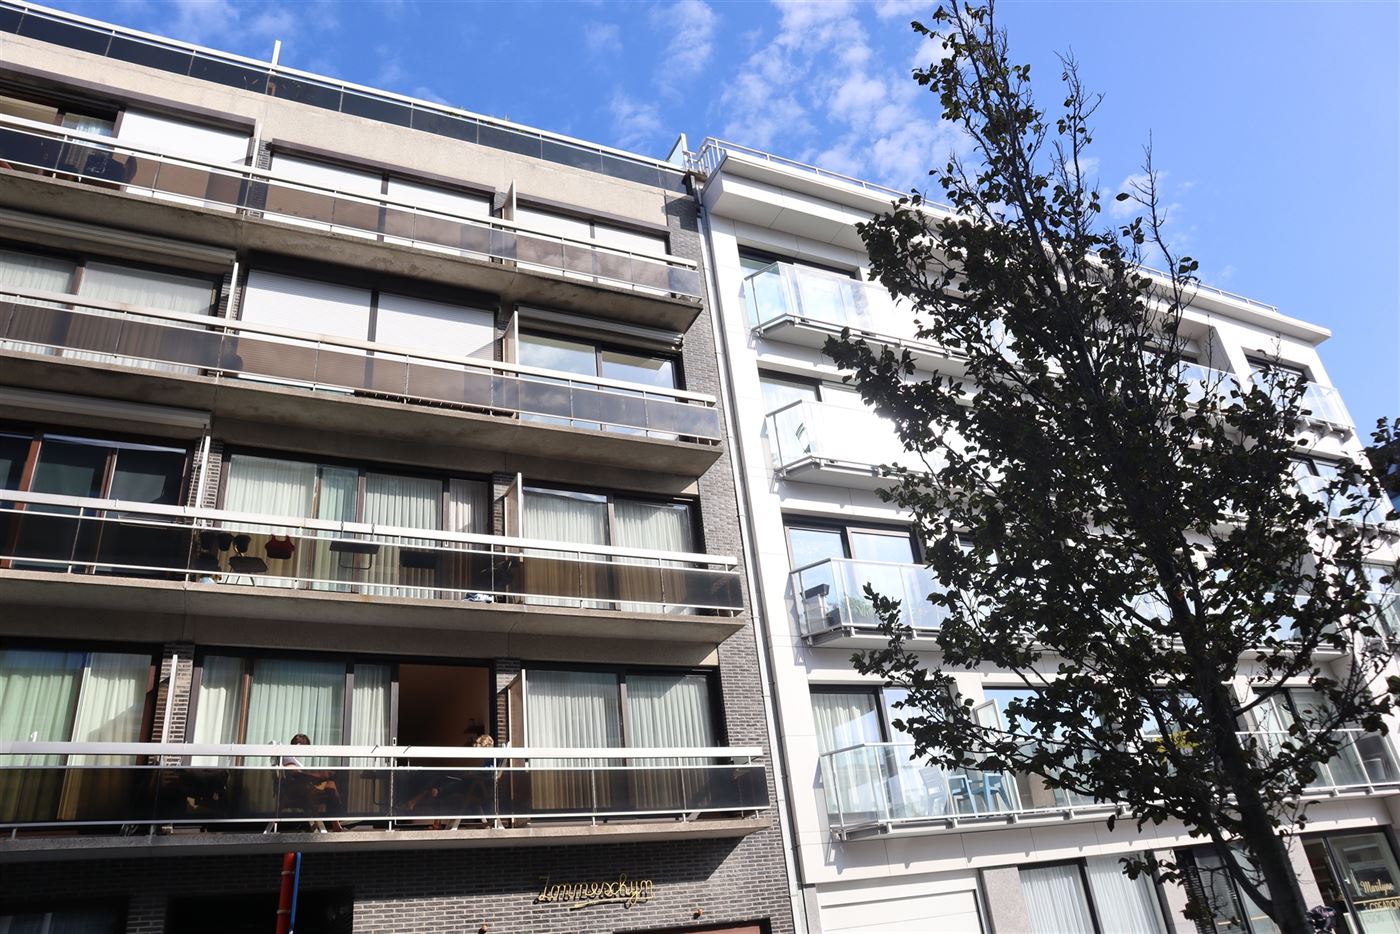 Res. Zonneschijn 0302 - Zonnig gerenoveerd appartement met twee slaapkamers - Gelegen op de derde verdieping in de Franslaan - Inkom - Apart toilet - ...